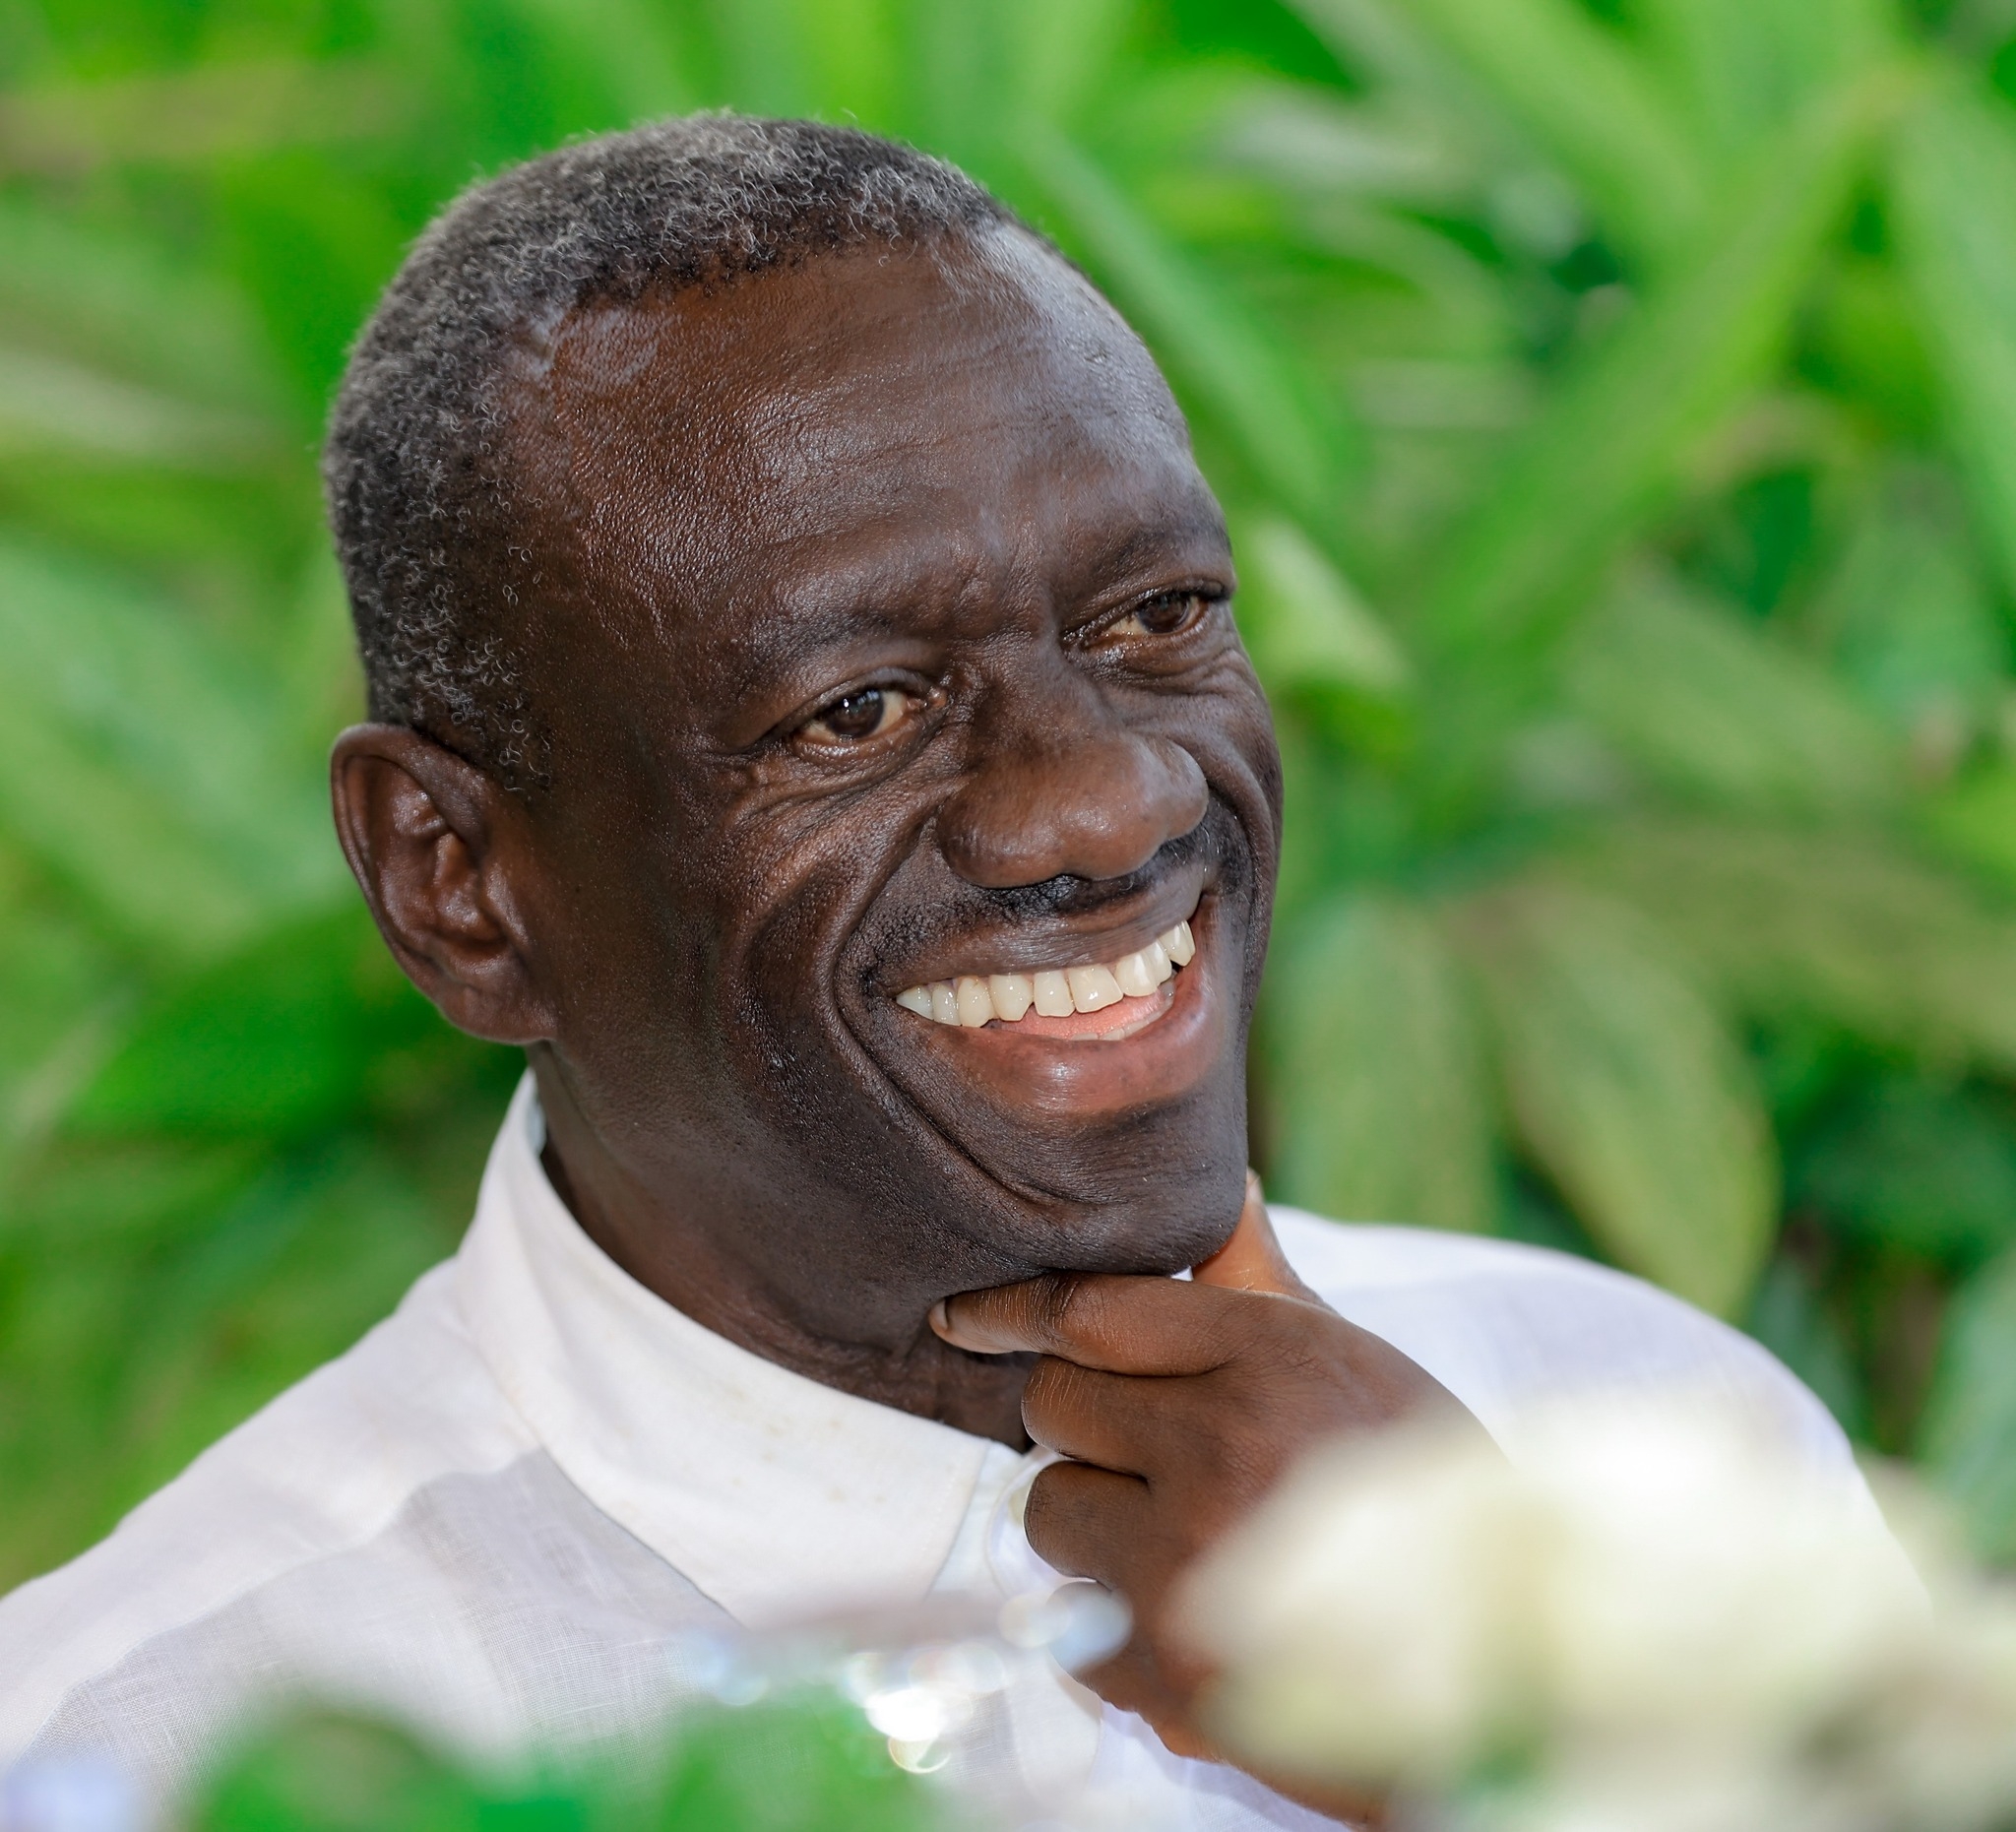 Ugandan political and Human Rights activist, Kifefe Kizza Besigye